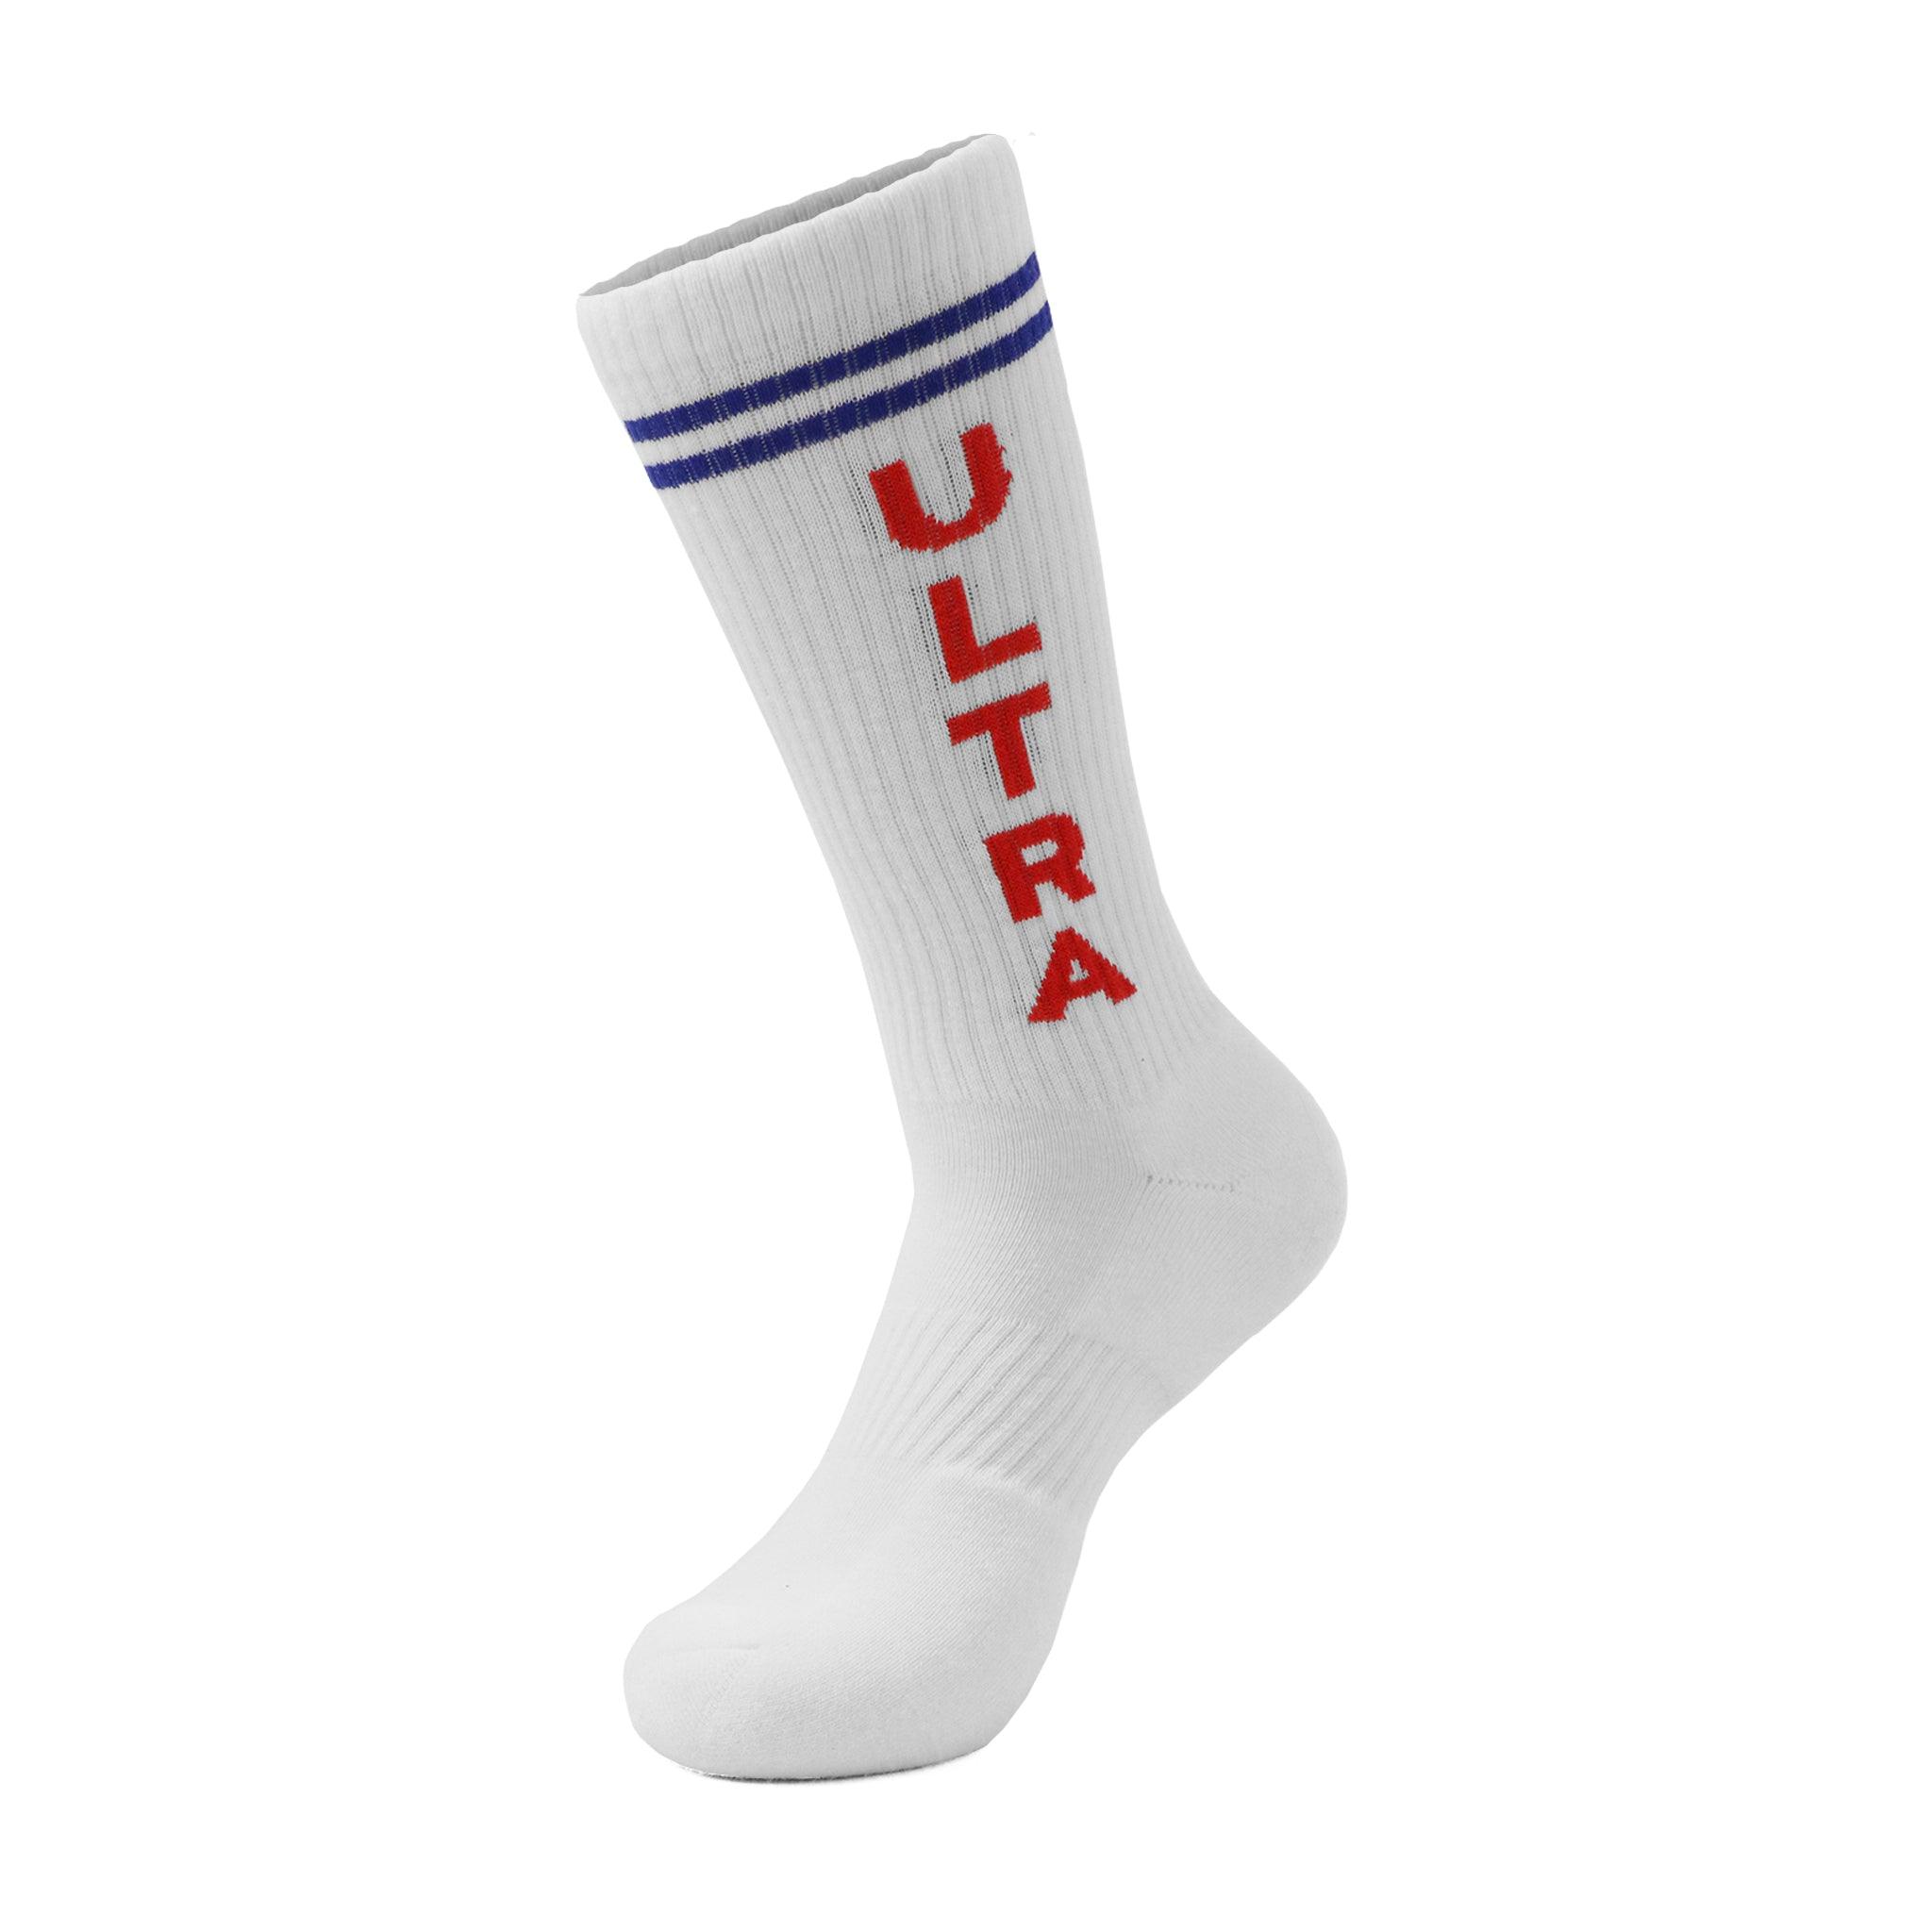 Michelob Ultra Socks Merch